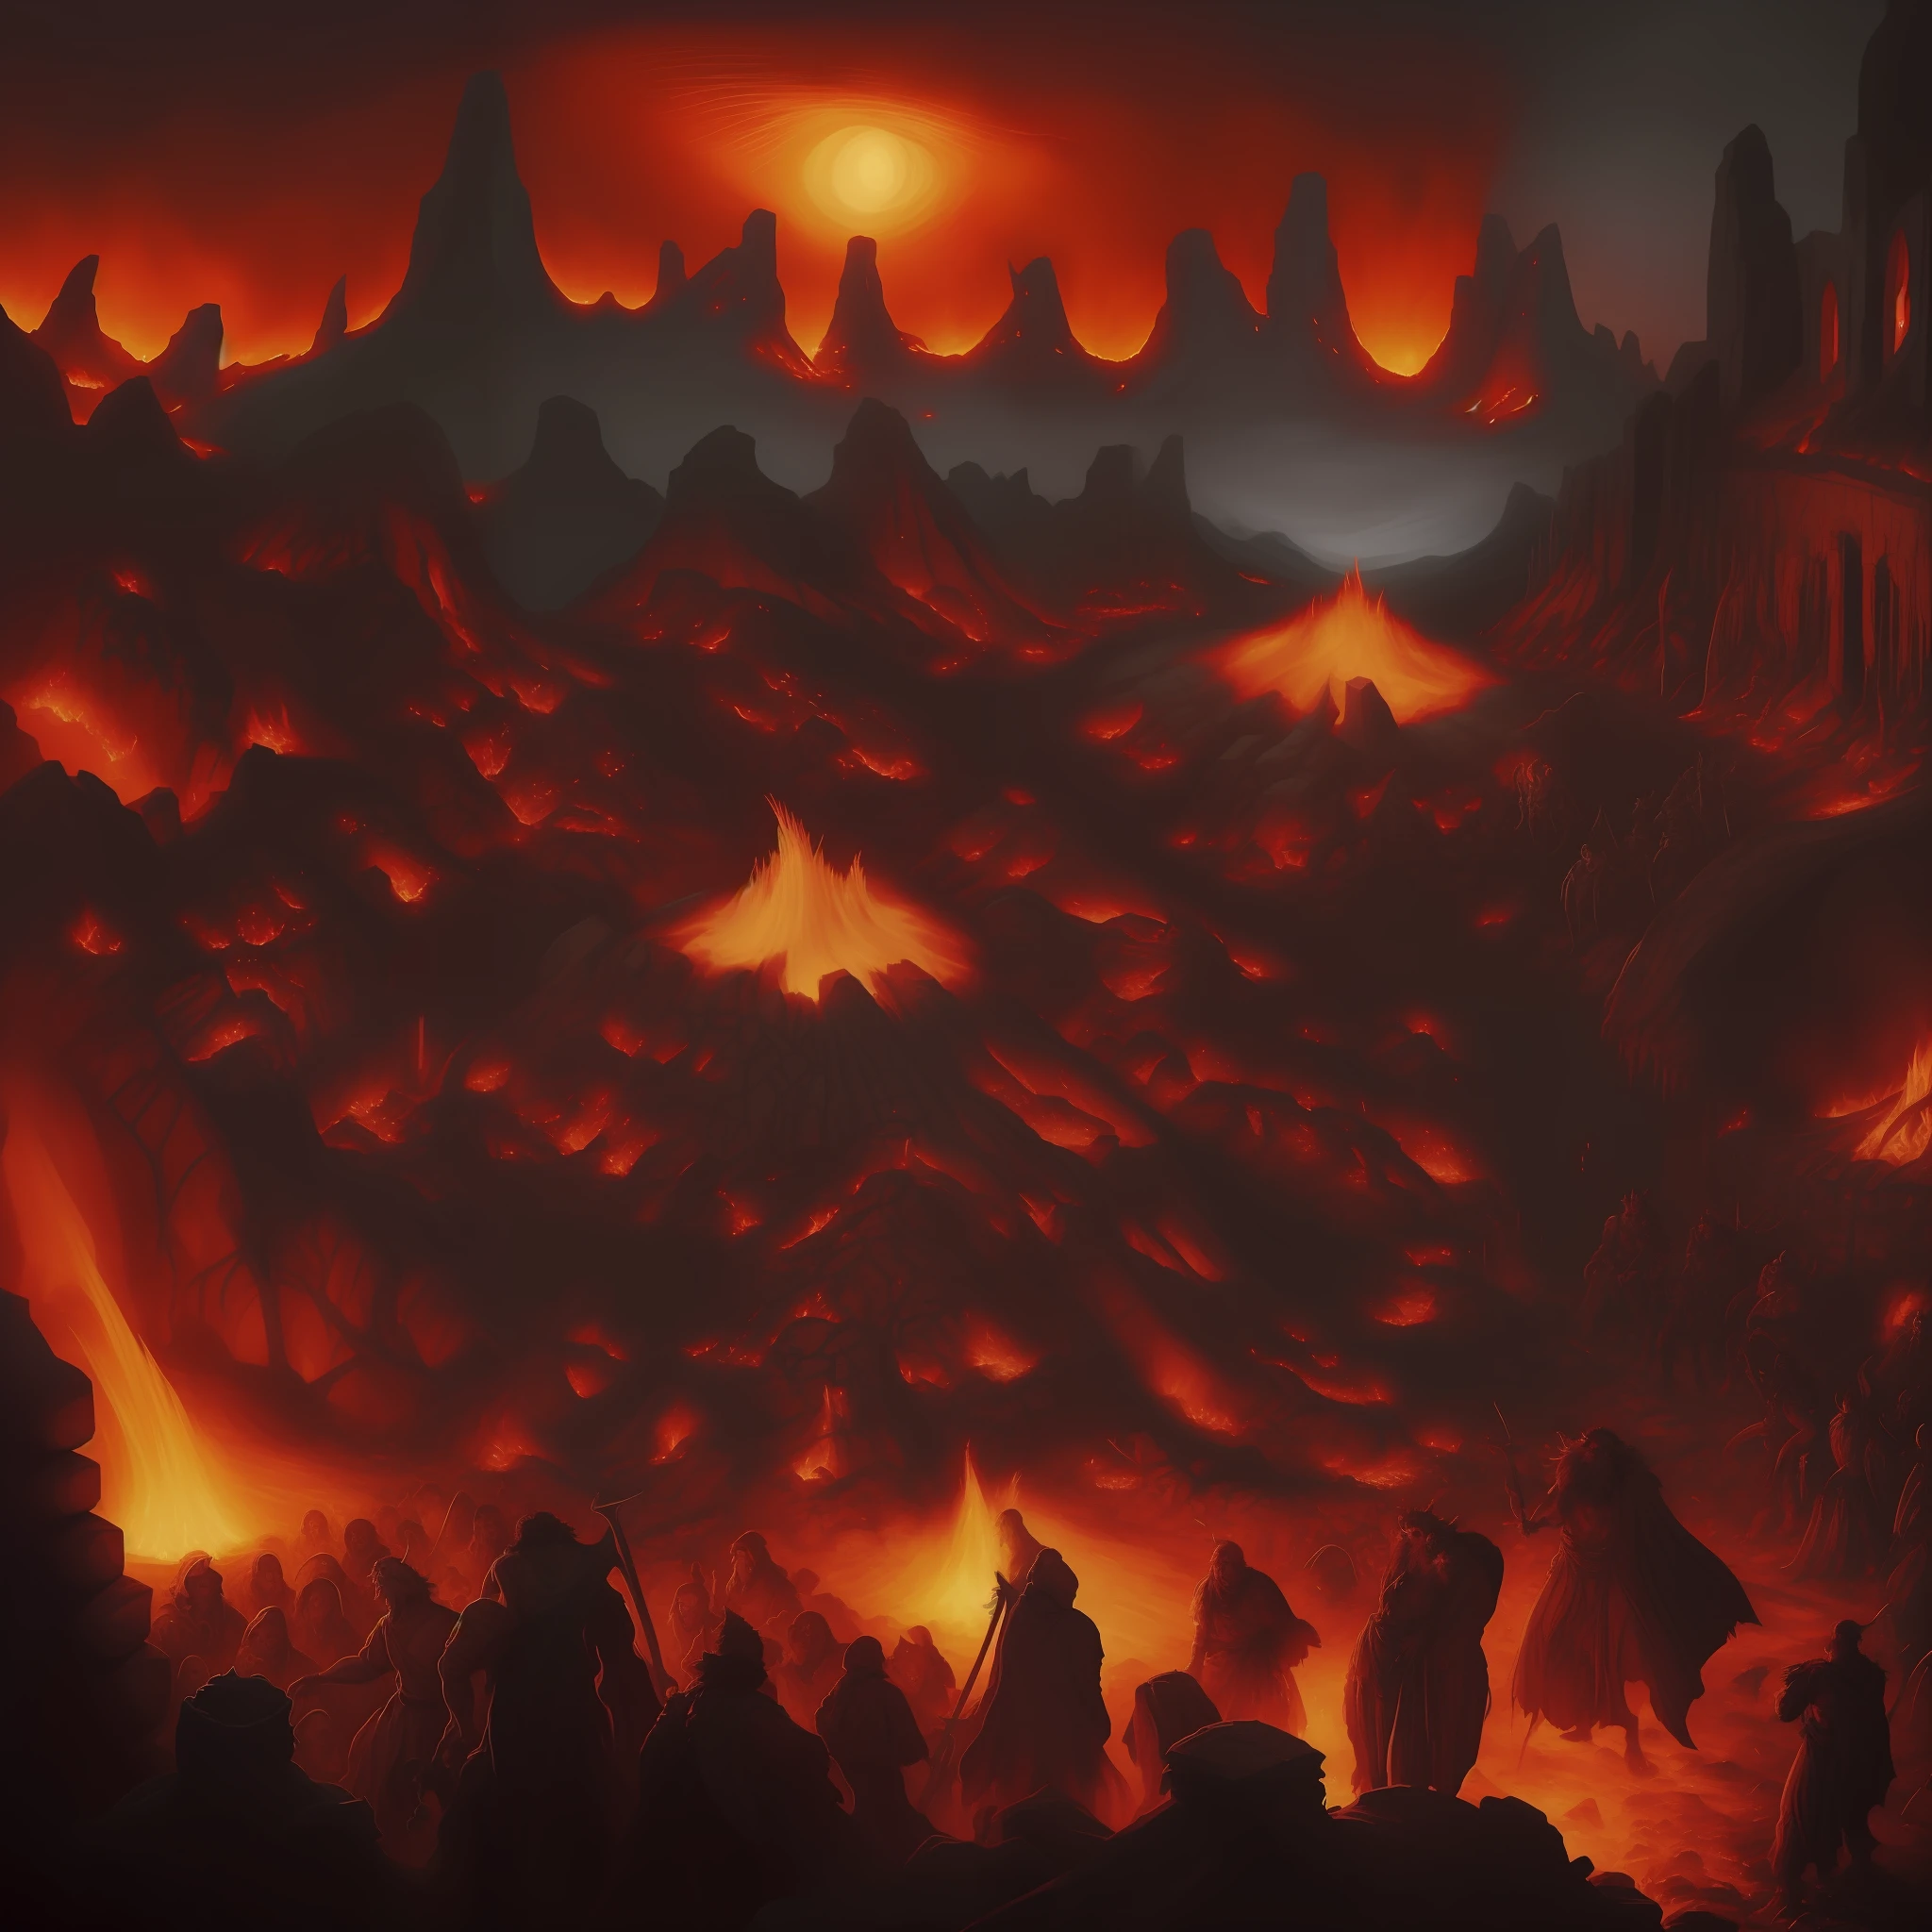 Stellen Sie sich eine epische und blutige Schlacht vor, Avernus, inspiriert von Dantes Inferno, Feuer, Strahlen, Monster, grau und Funken fliegen, Epische Schlacht in der Hölle, Krieg zwischen Dämonen, Flammen, labaredas de Feuer, Ruinen, Chaos, Stil d&D, Stil dnD